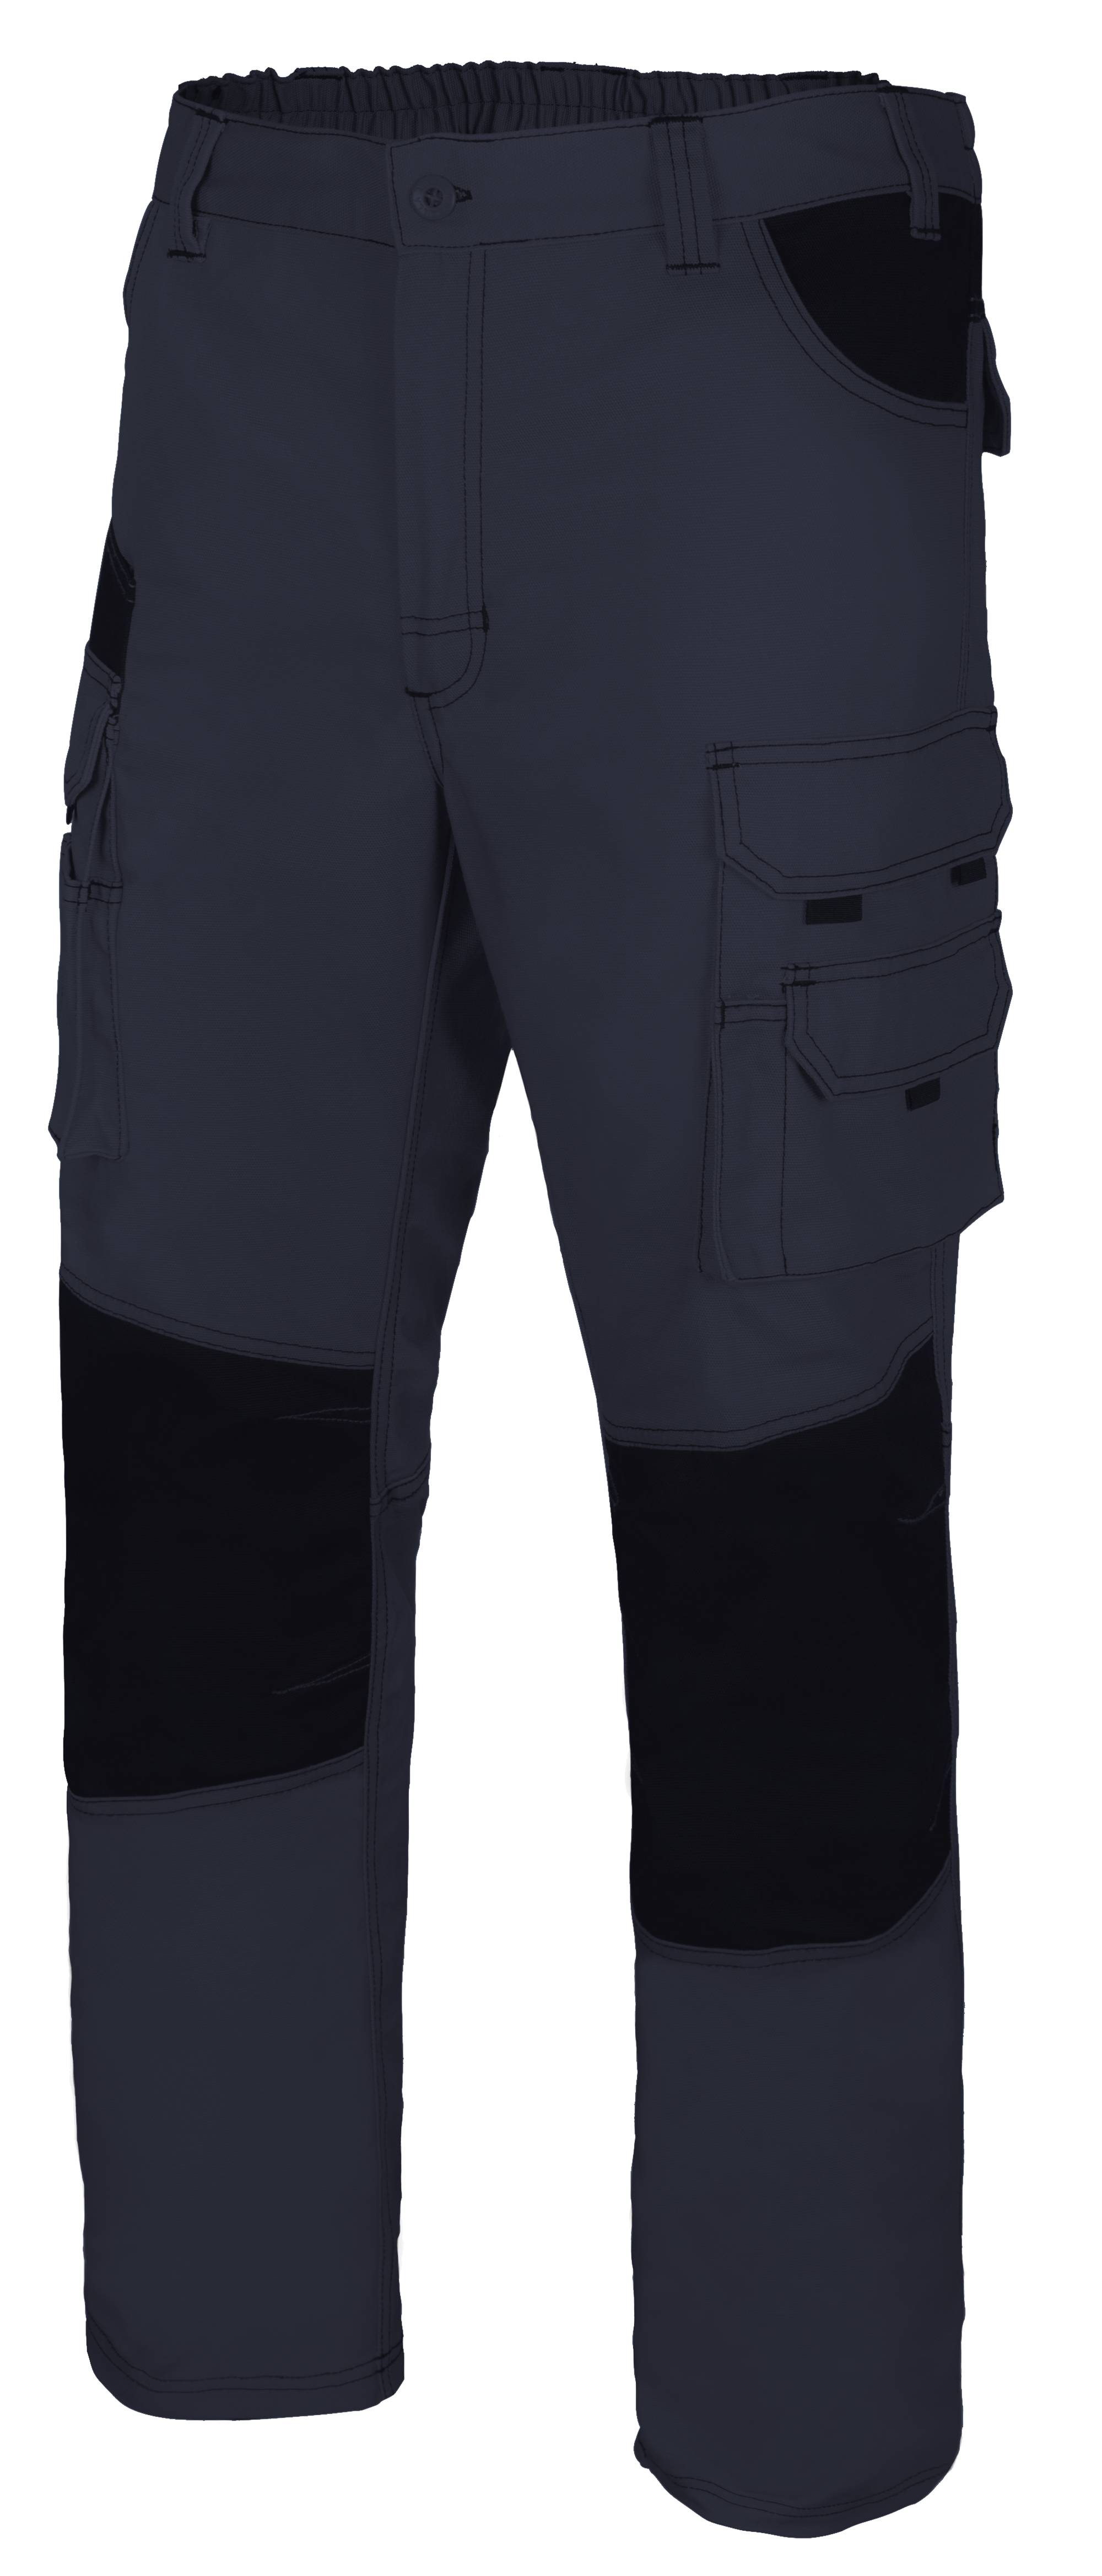 Pantalon de trabajo canvas multibolsillo navy/negro txl